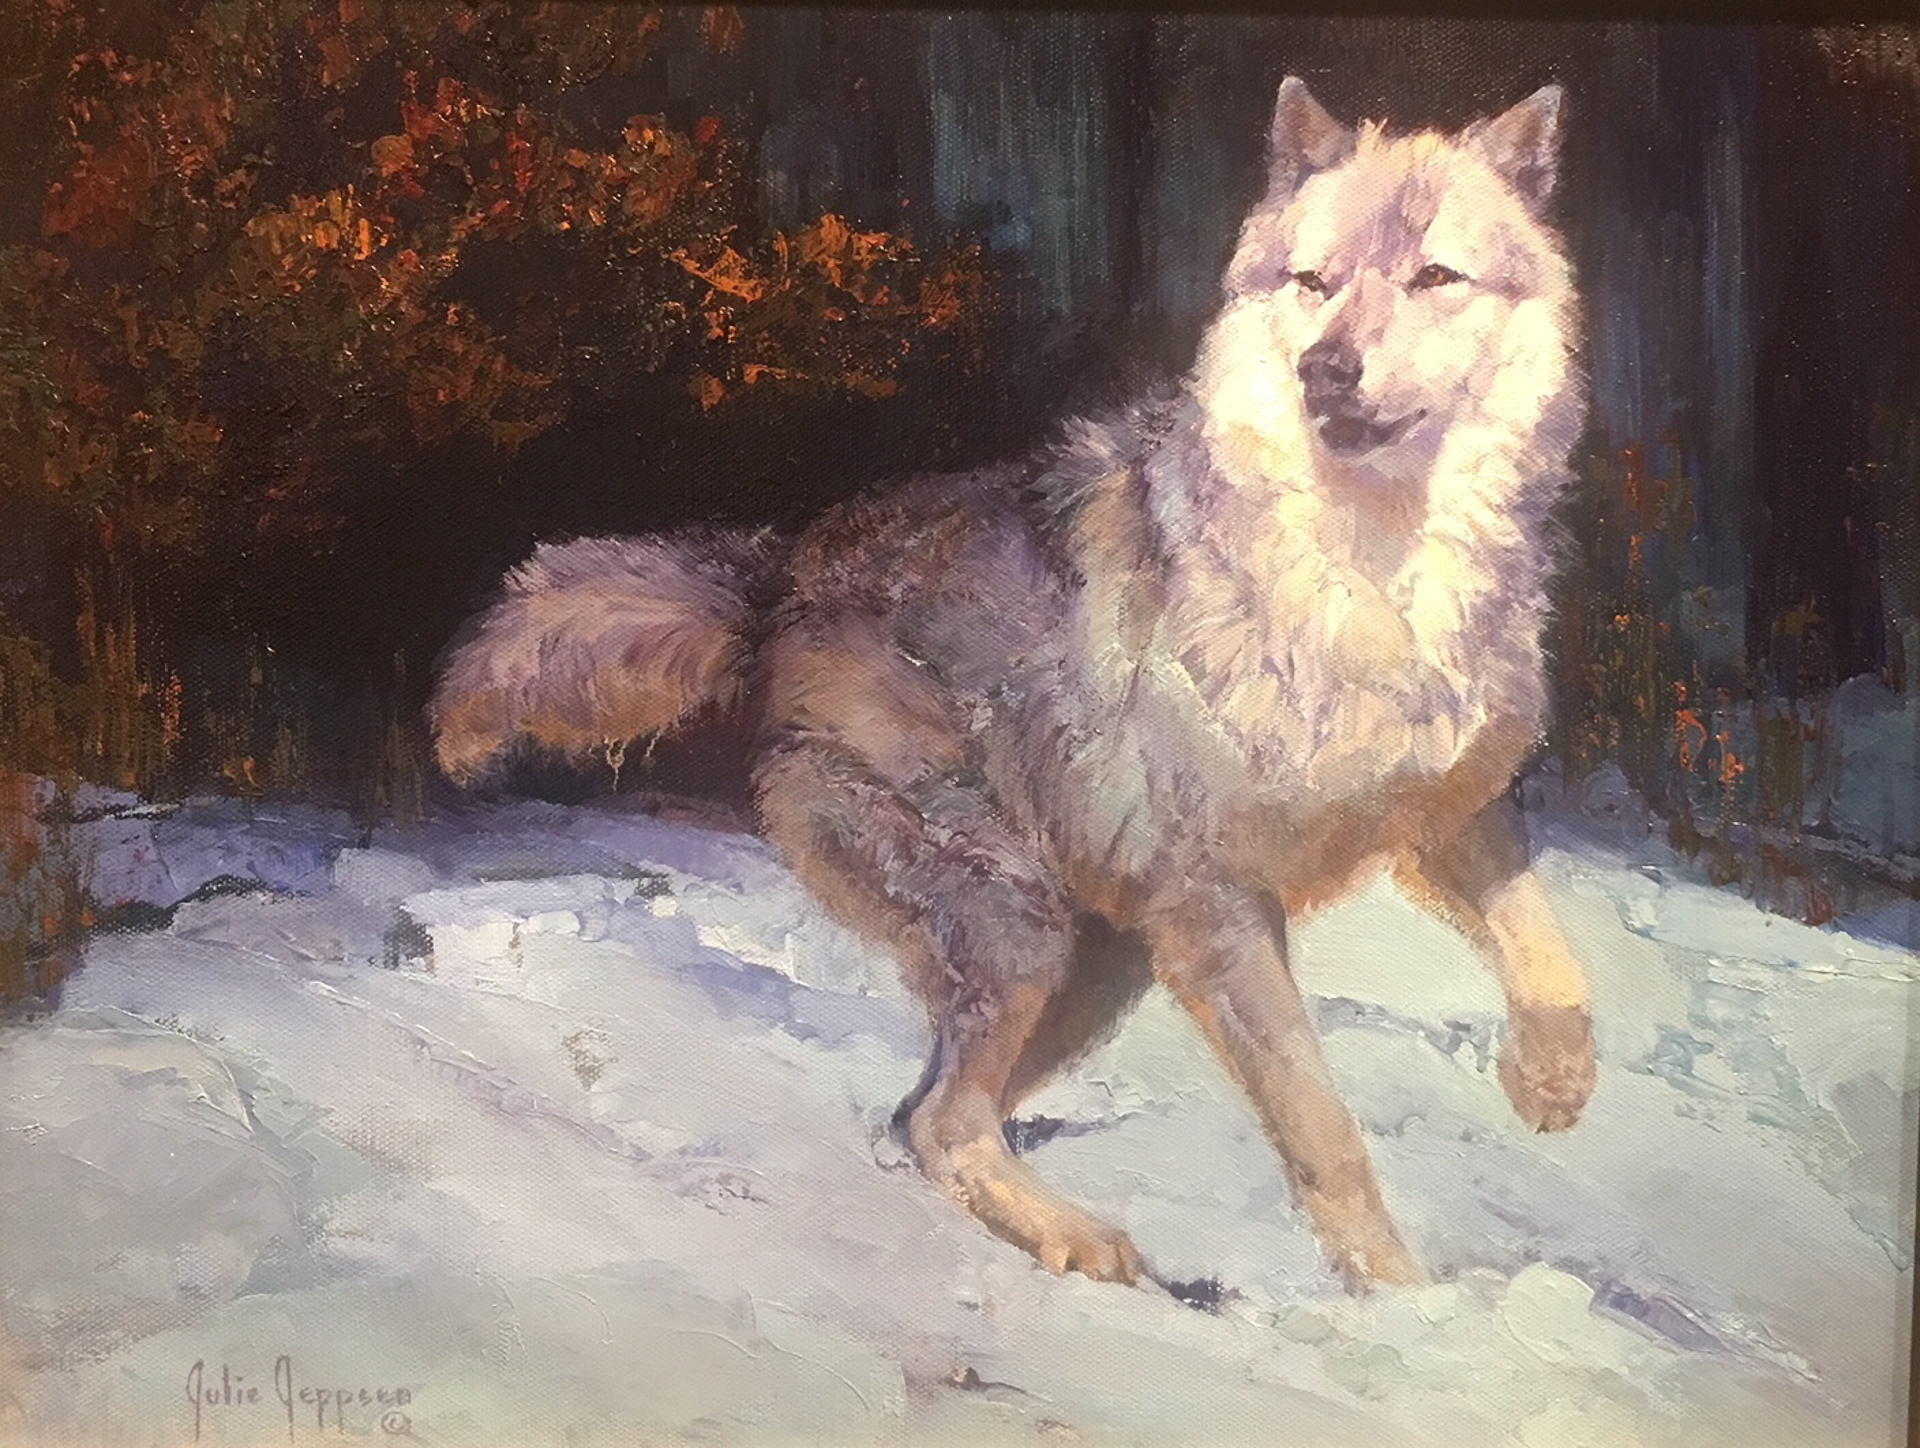 Moonlit (Wolf) by Julie Jeppsen